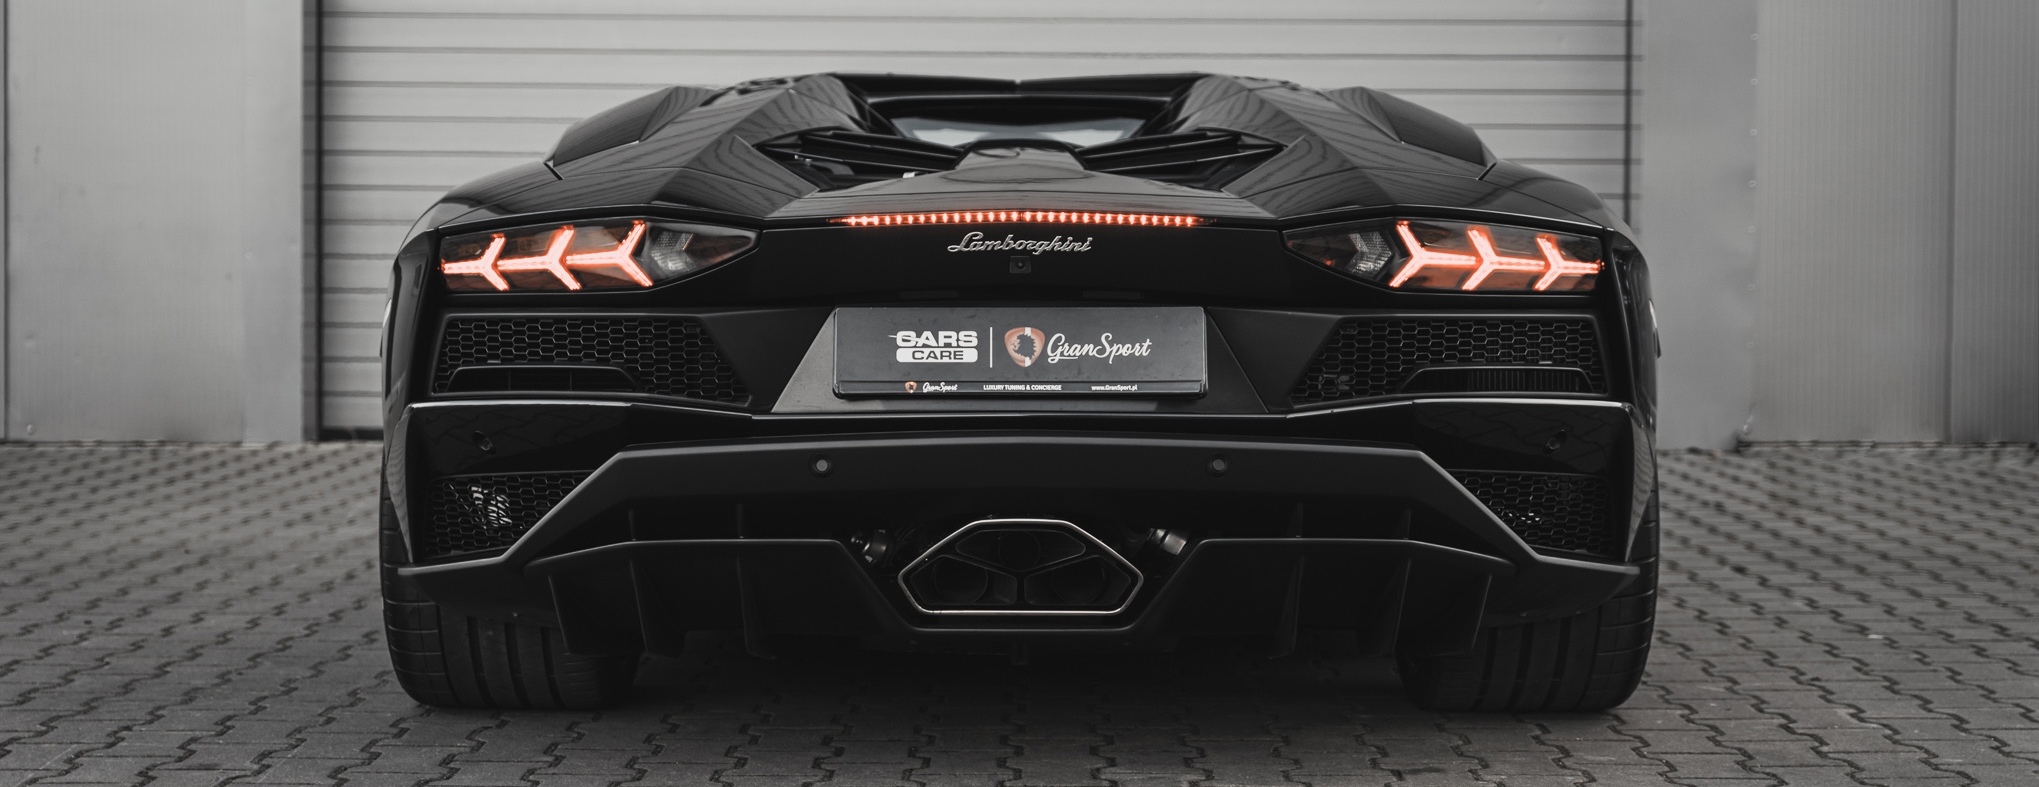 Lamborghini Aventador S Novitec